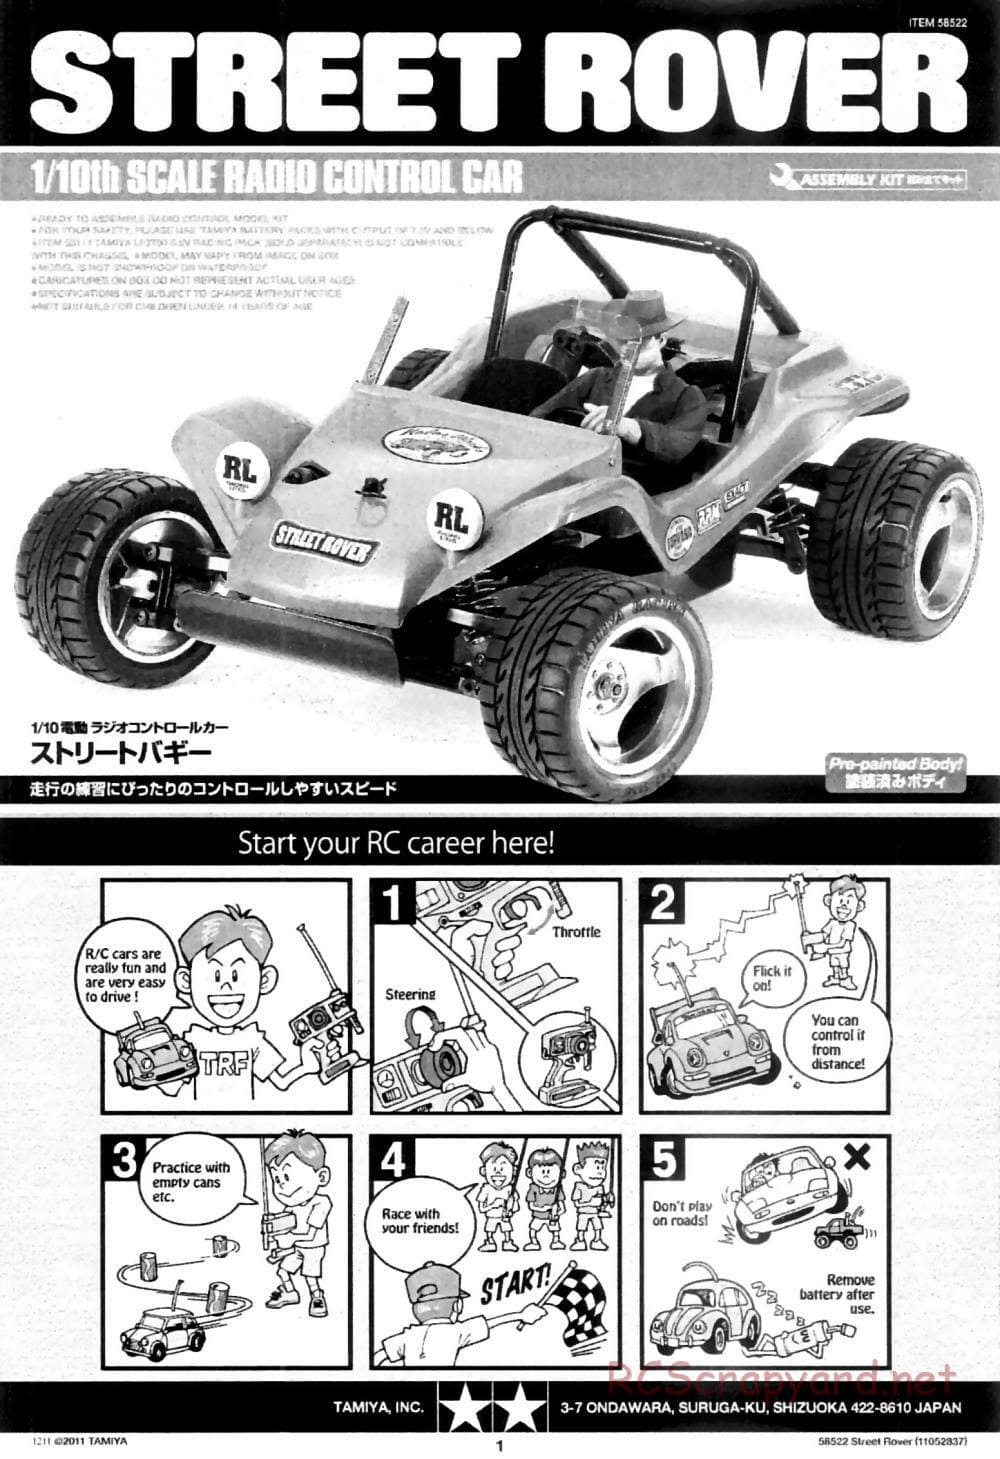 Tamiya - Street Rover Chassis - Manual - Page 2